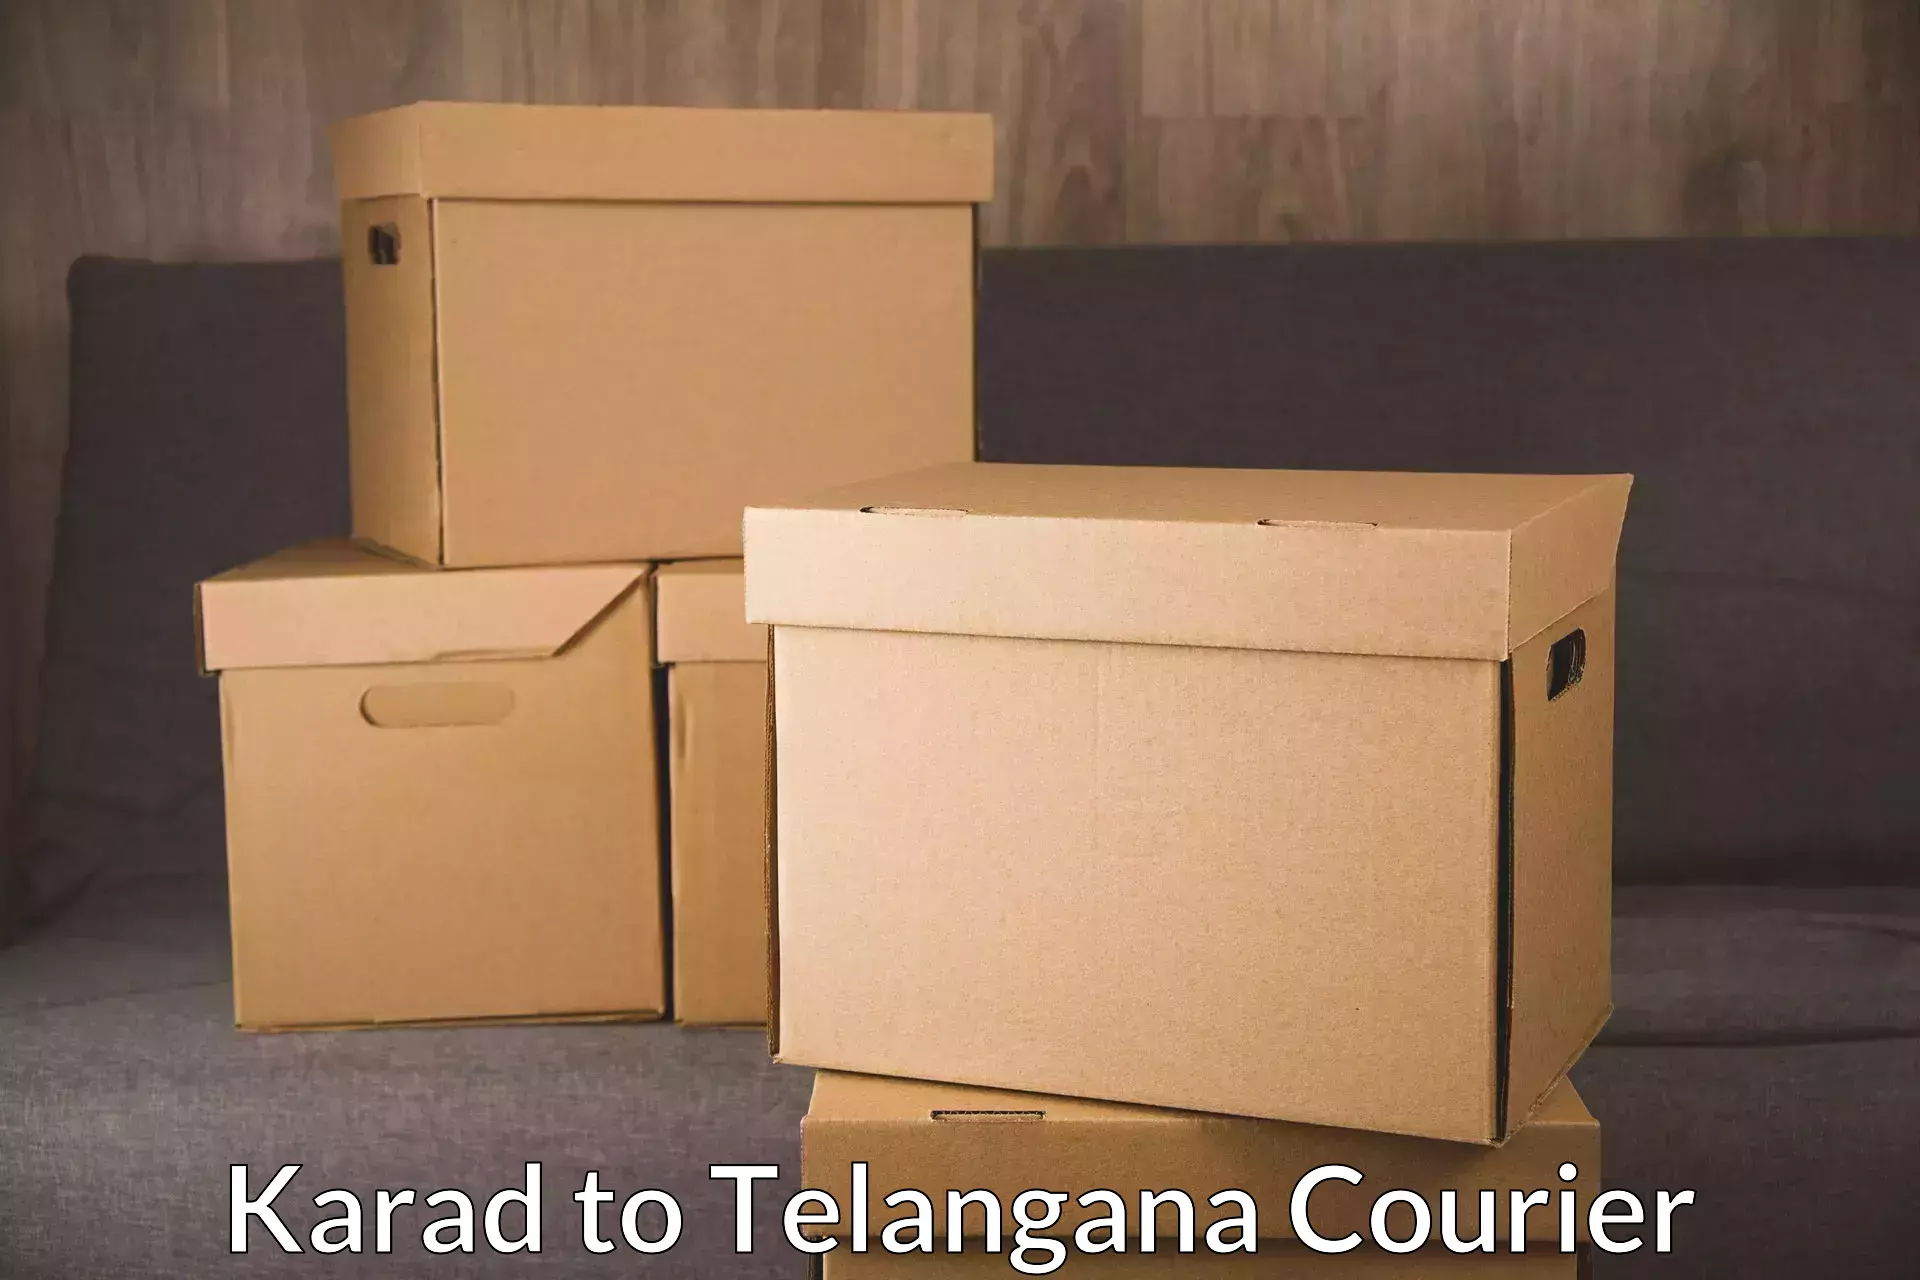 Affordable shipping solutions Karad to Telangana